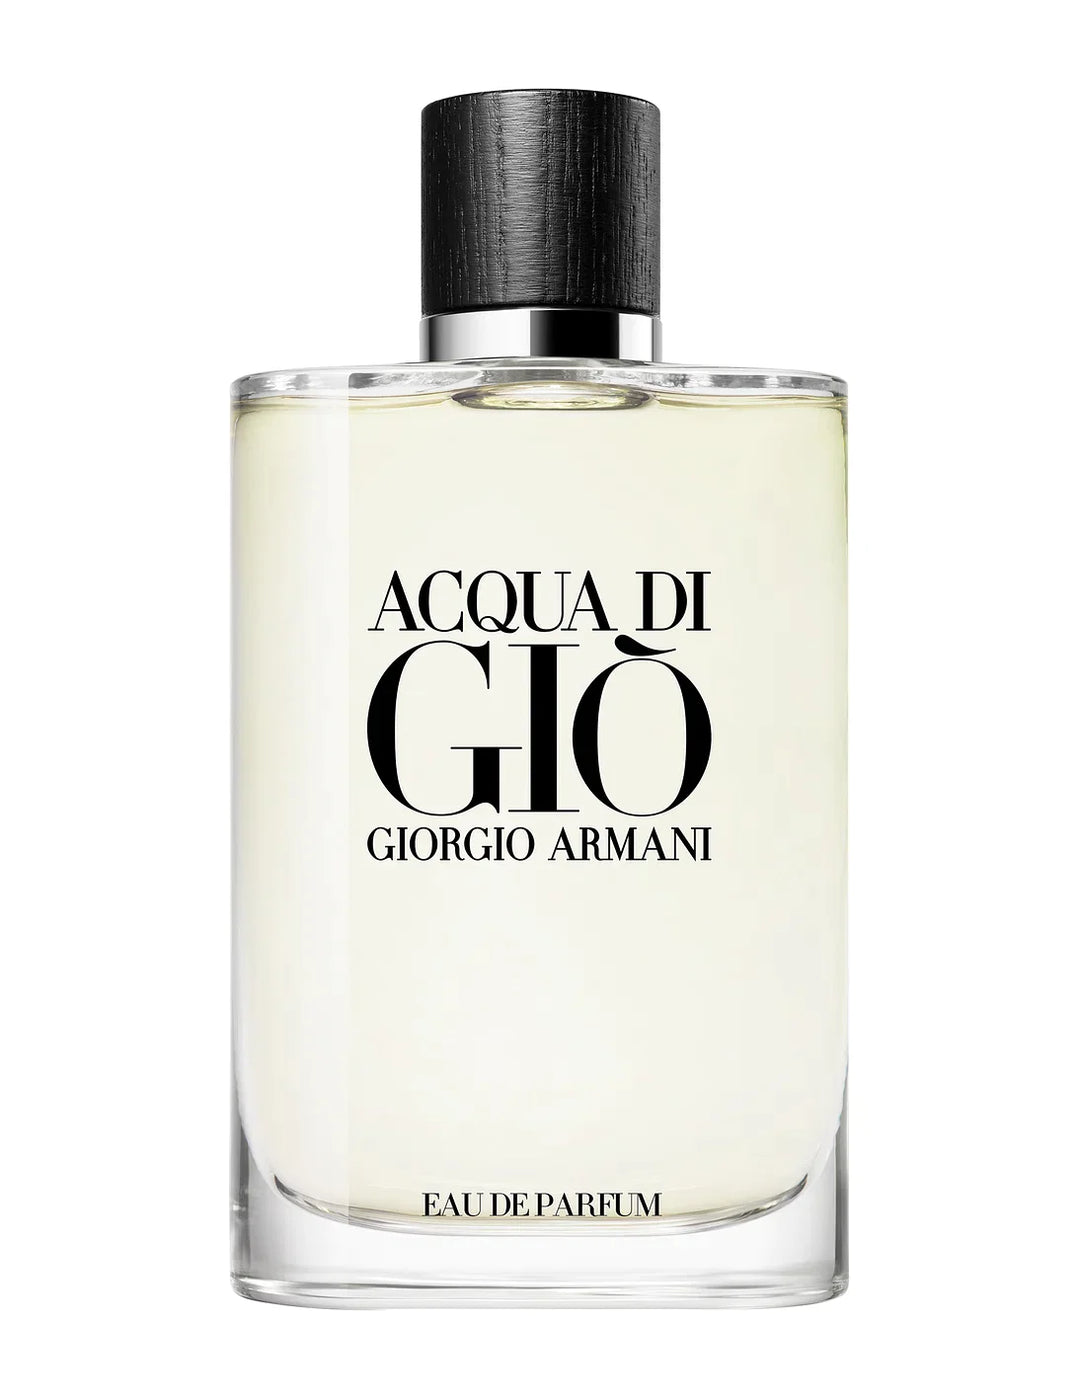 GIORGIO ARMANI Acqua Di Gio Eau De Parfum